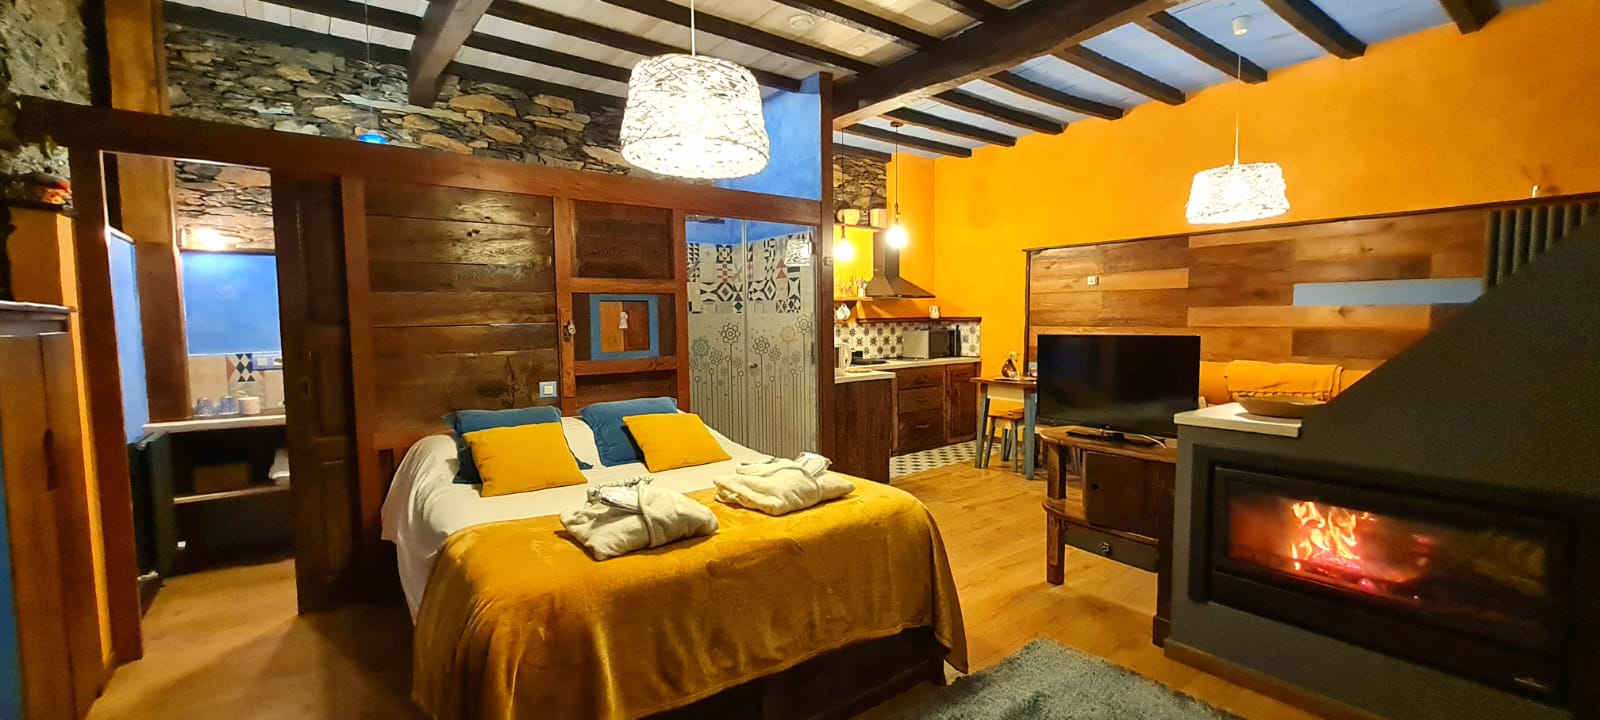 Experiencia_Alojamiento_con_Desayuno_y_Cena_Picoteo_Apartamentos_El_Bosque_en_Boal_Asturias